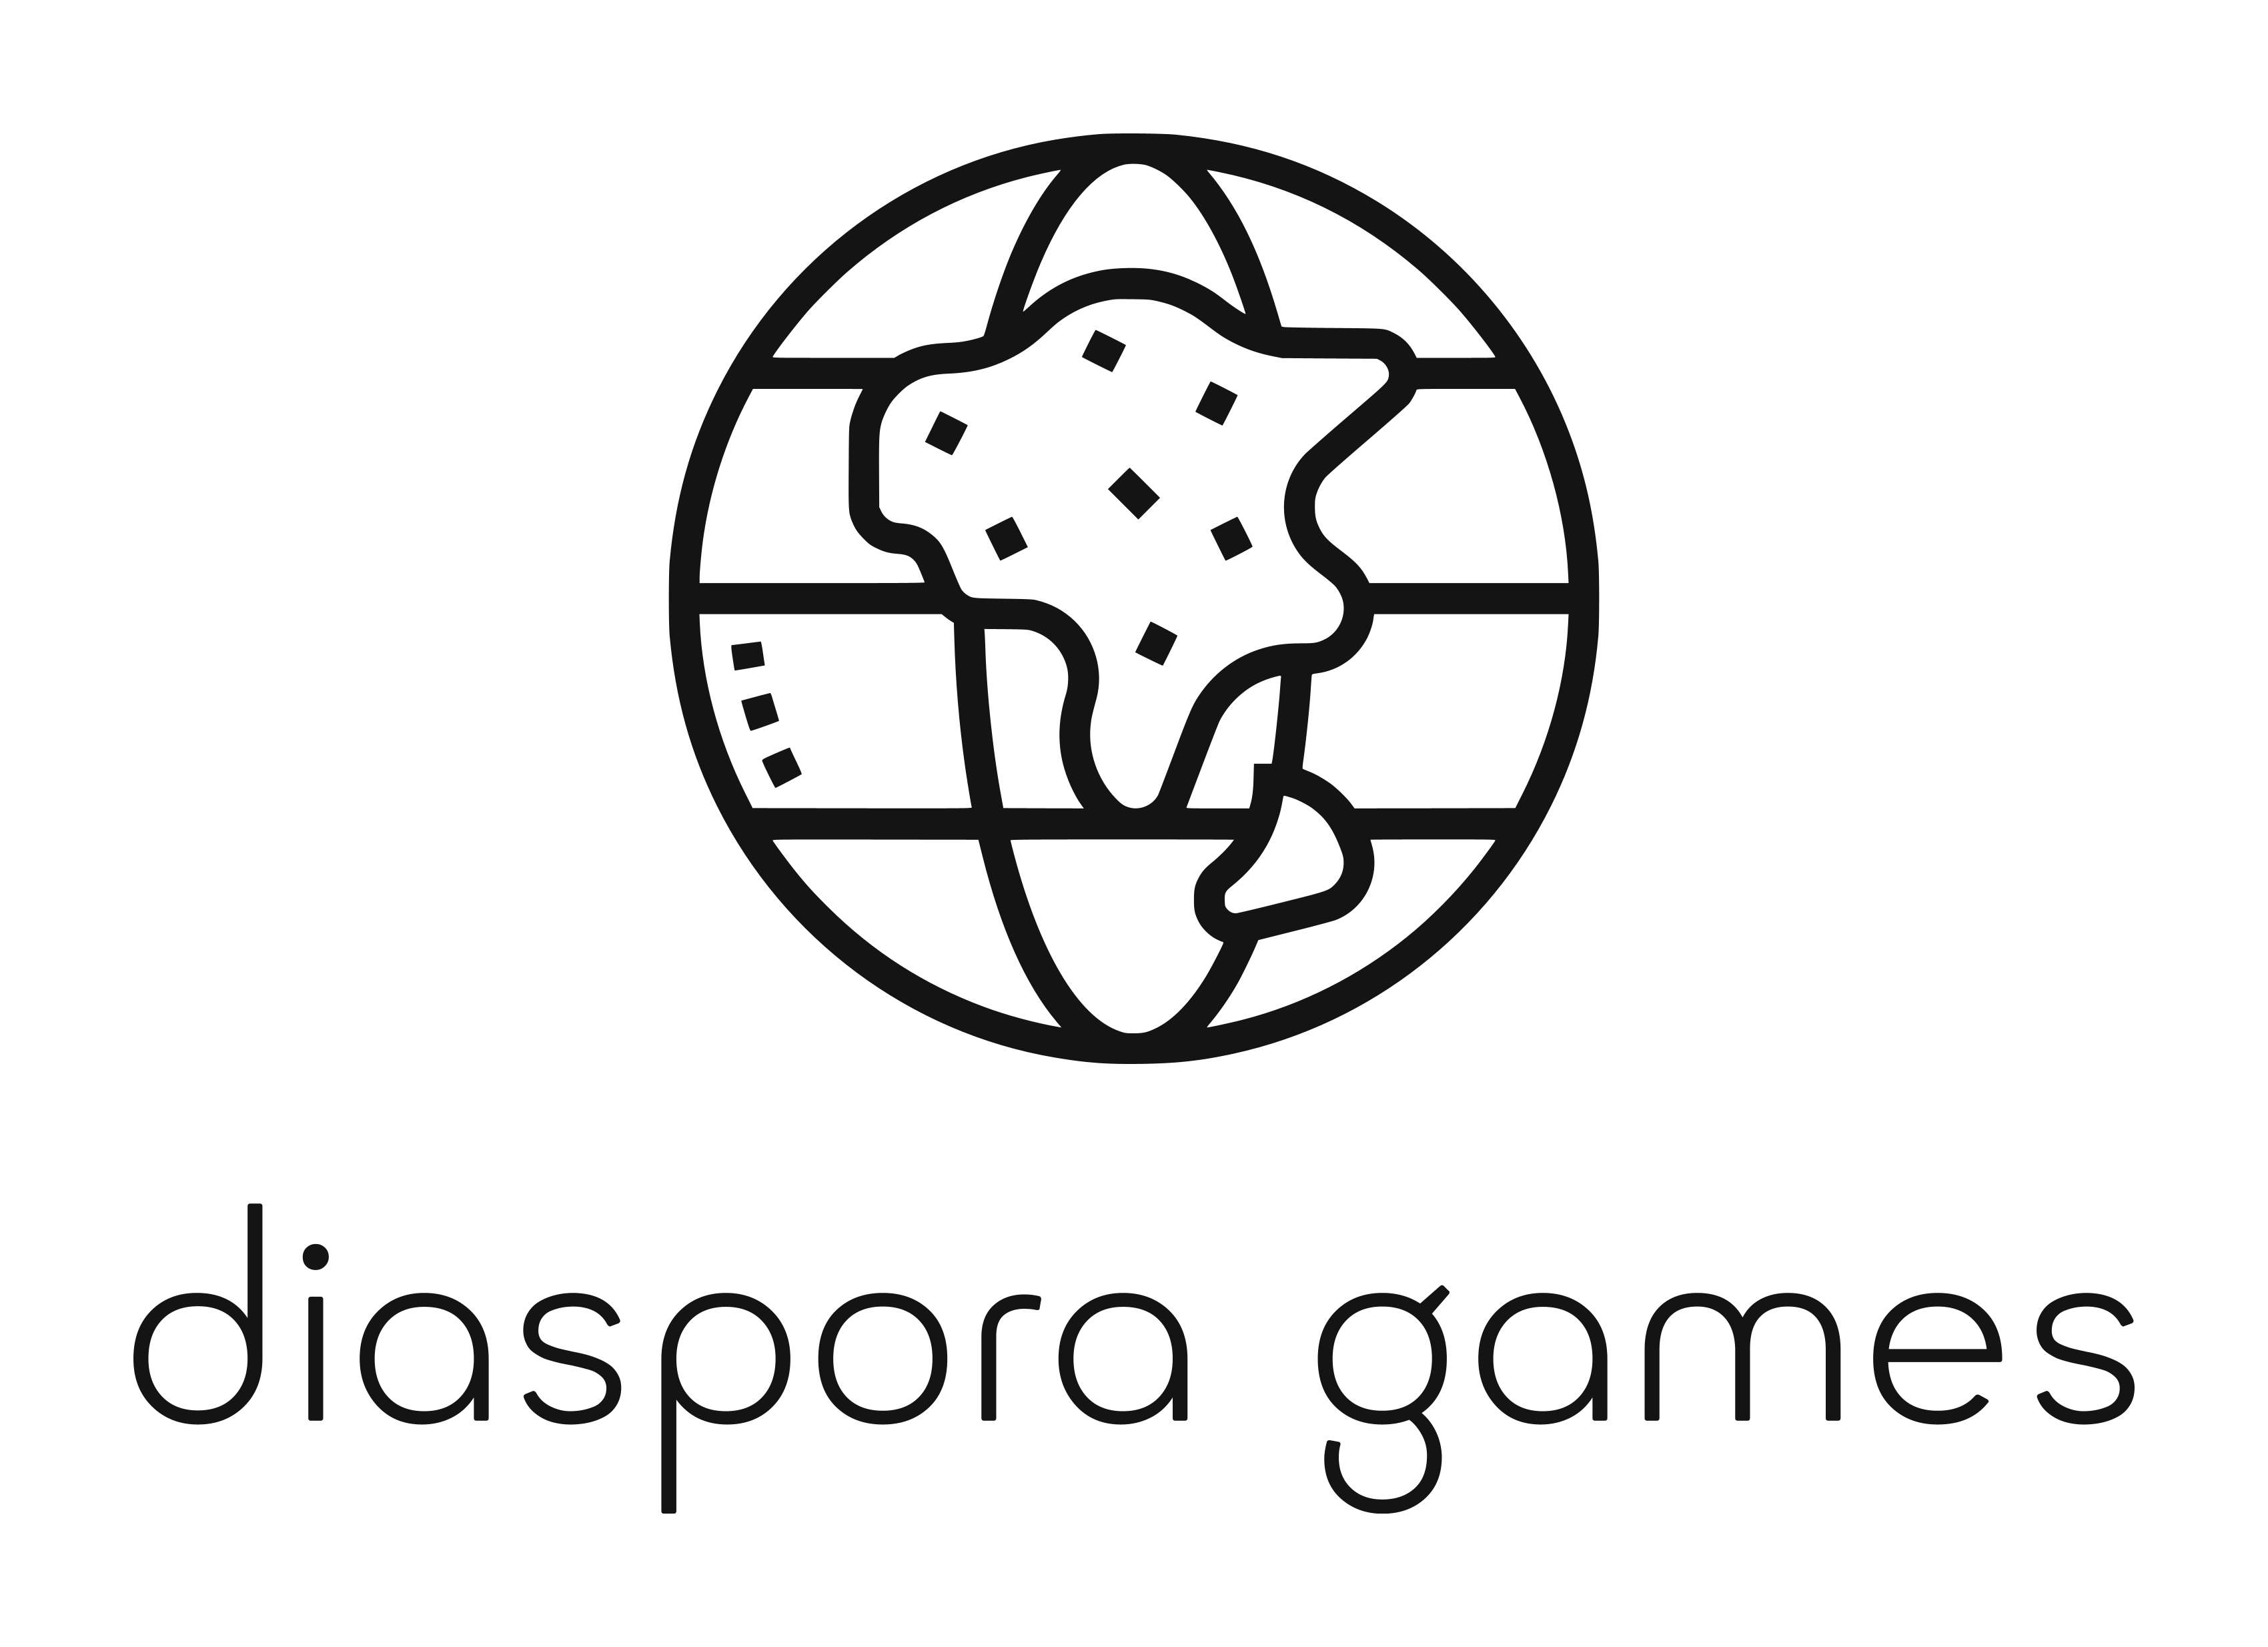 Diaspora Games logo